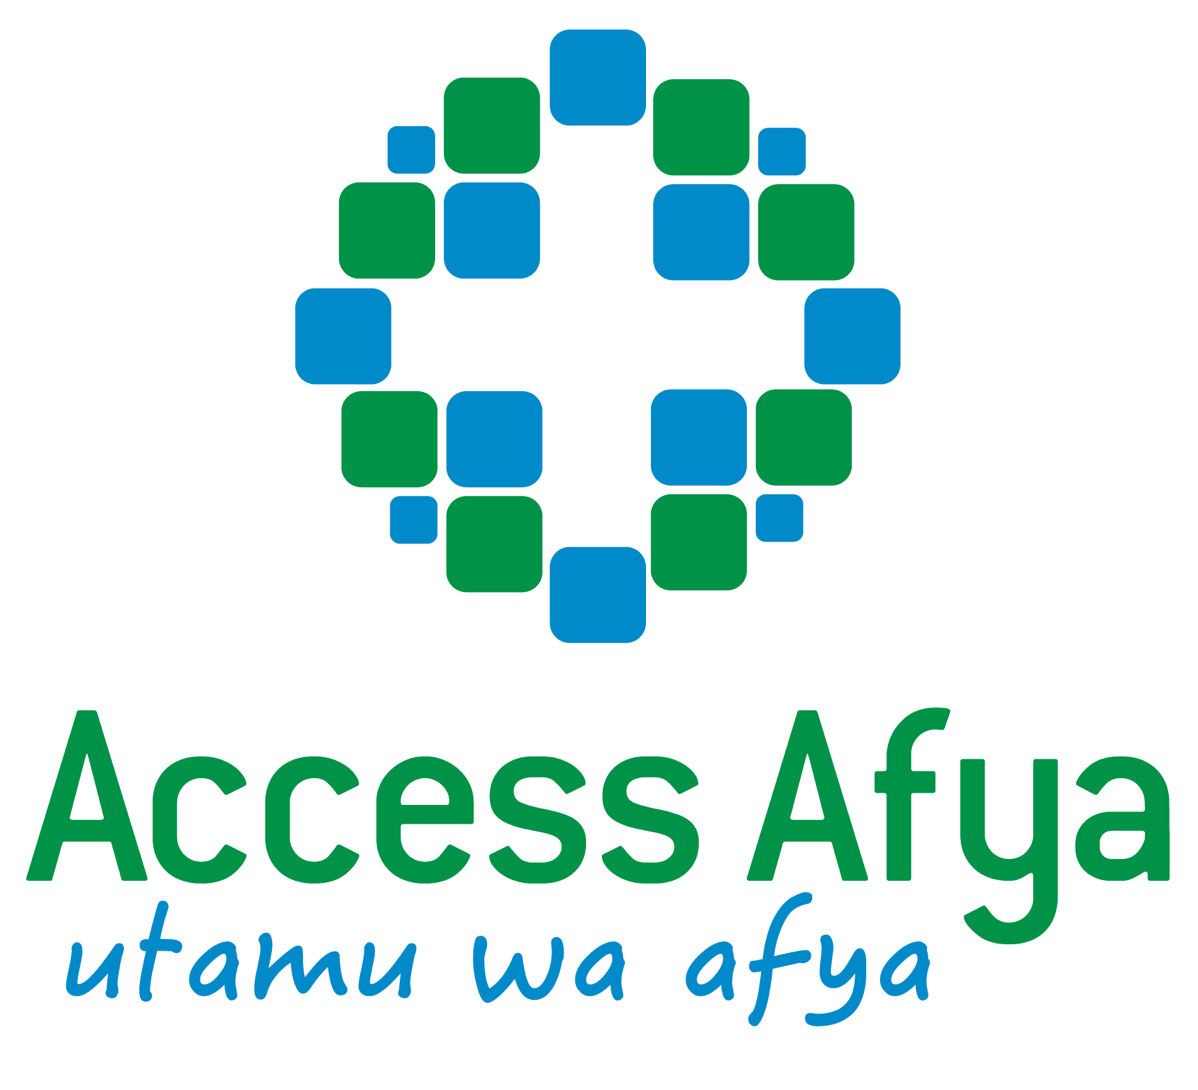 Access Afya